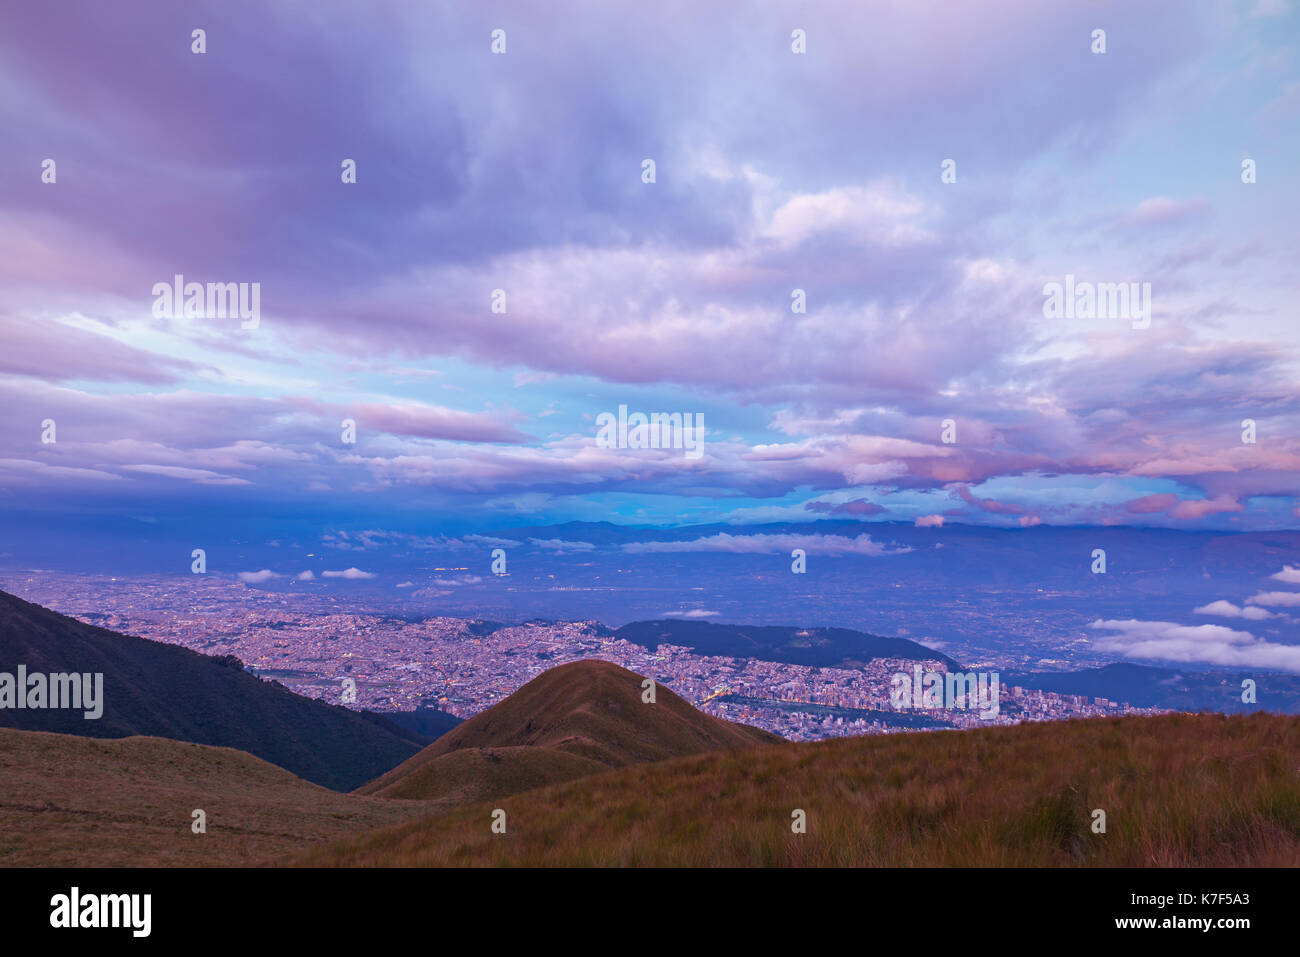 Lo skyline della città di Quito al crepuscolo con una lunga esposizione e vista aerea fotografia visto dall'attivo vulcano Pichincha, Ecuador, America Latina. Foto Stock